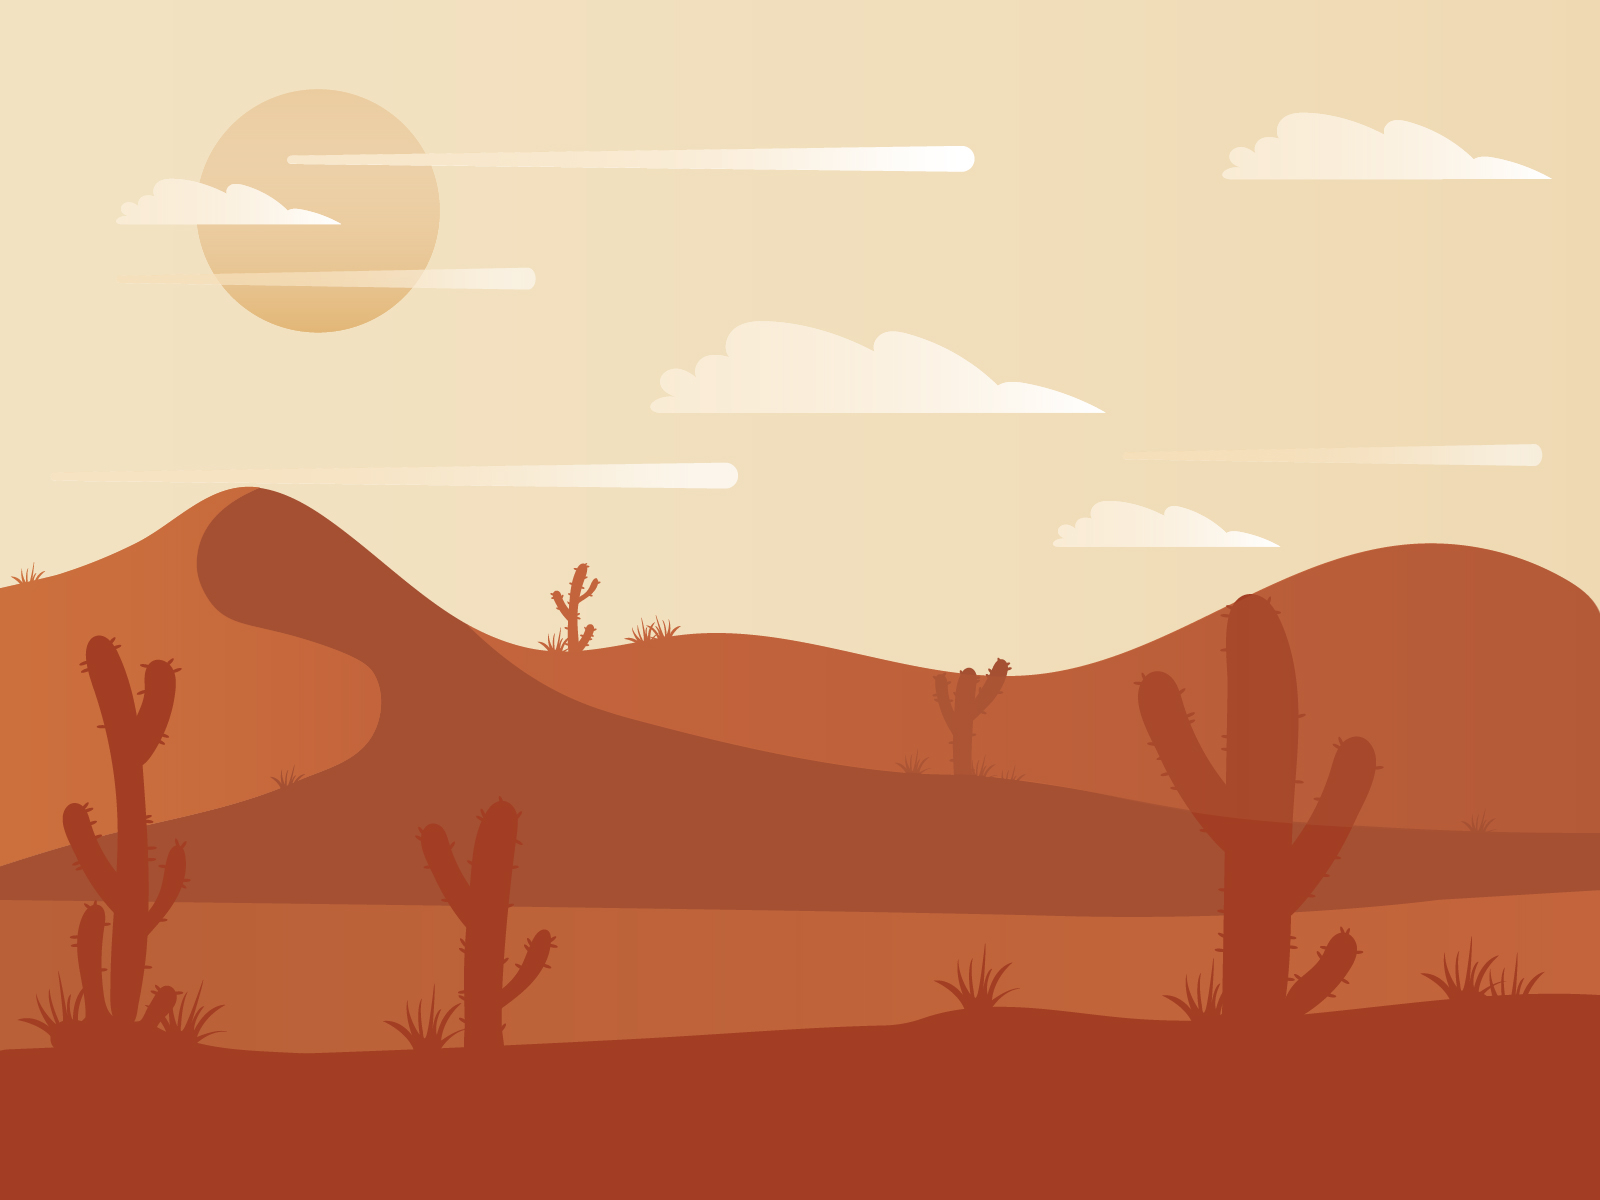 Simple Sahara Illustration by Julia on Dribbble